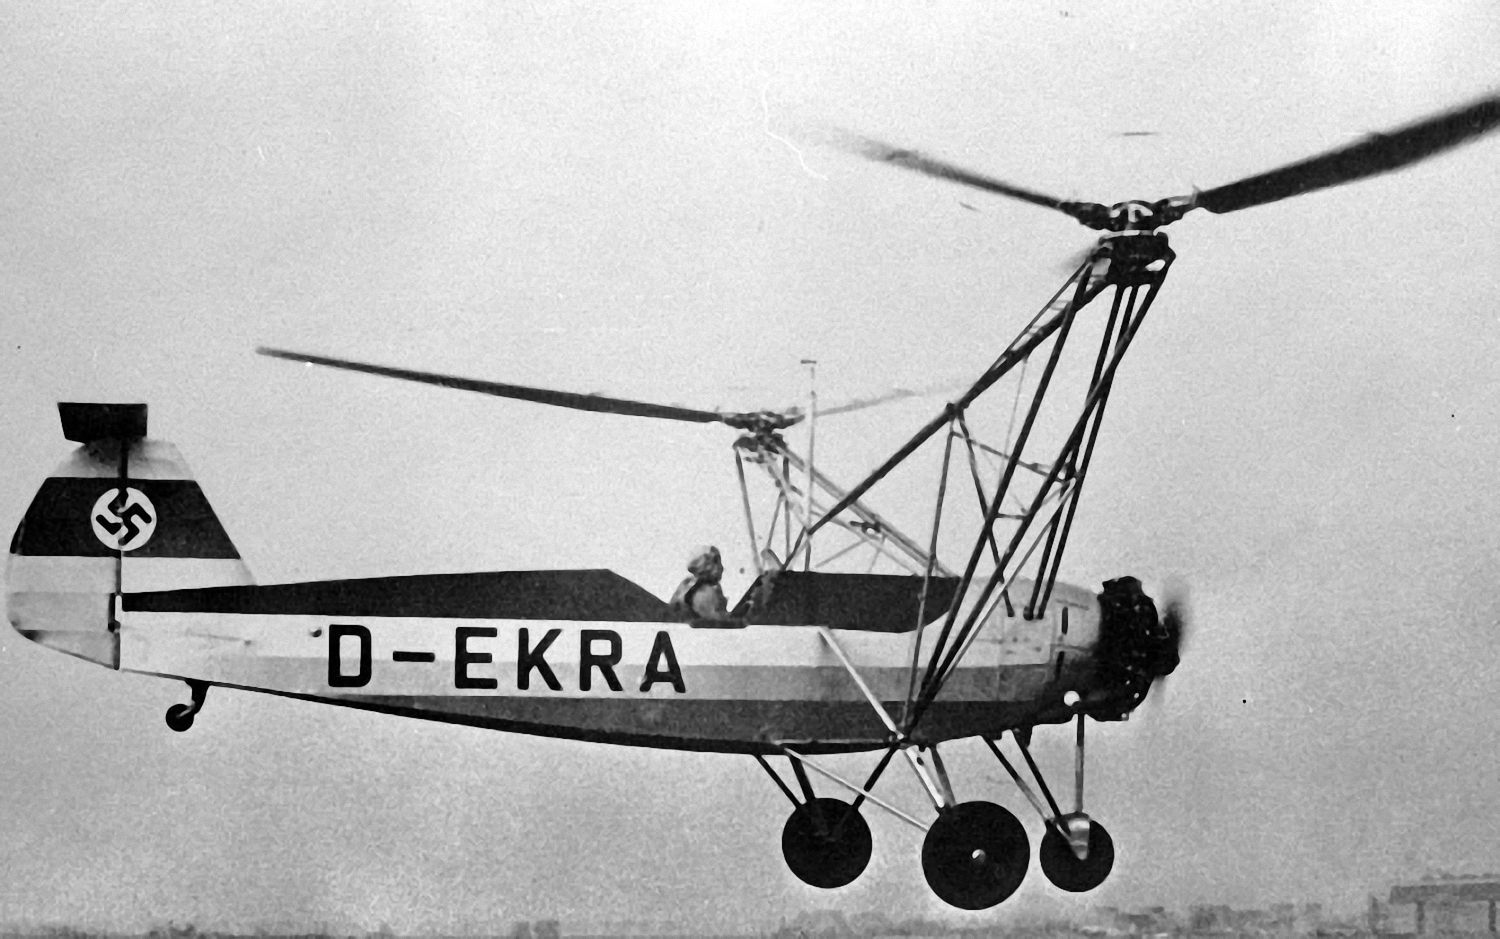 Hanna Reitsch fliegt mit der Fw 61 V2